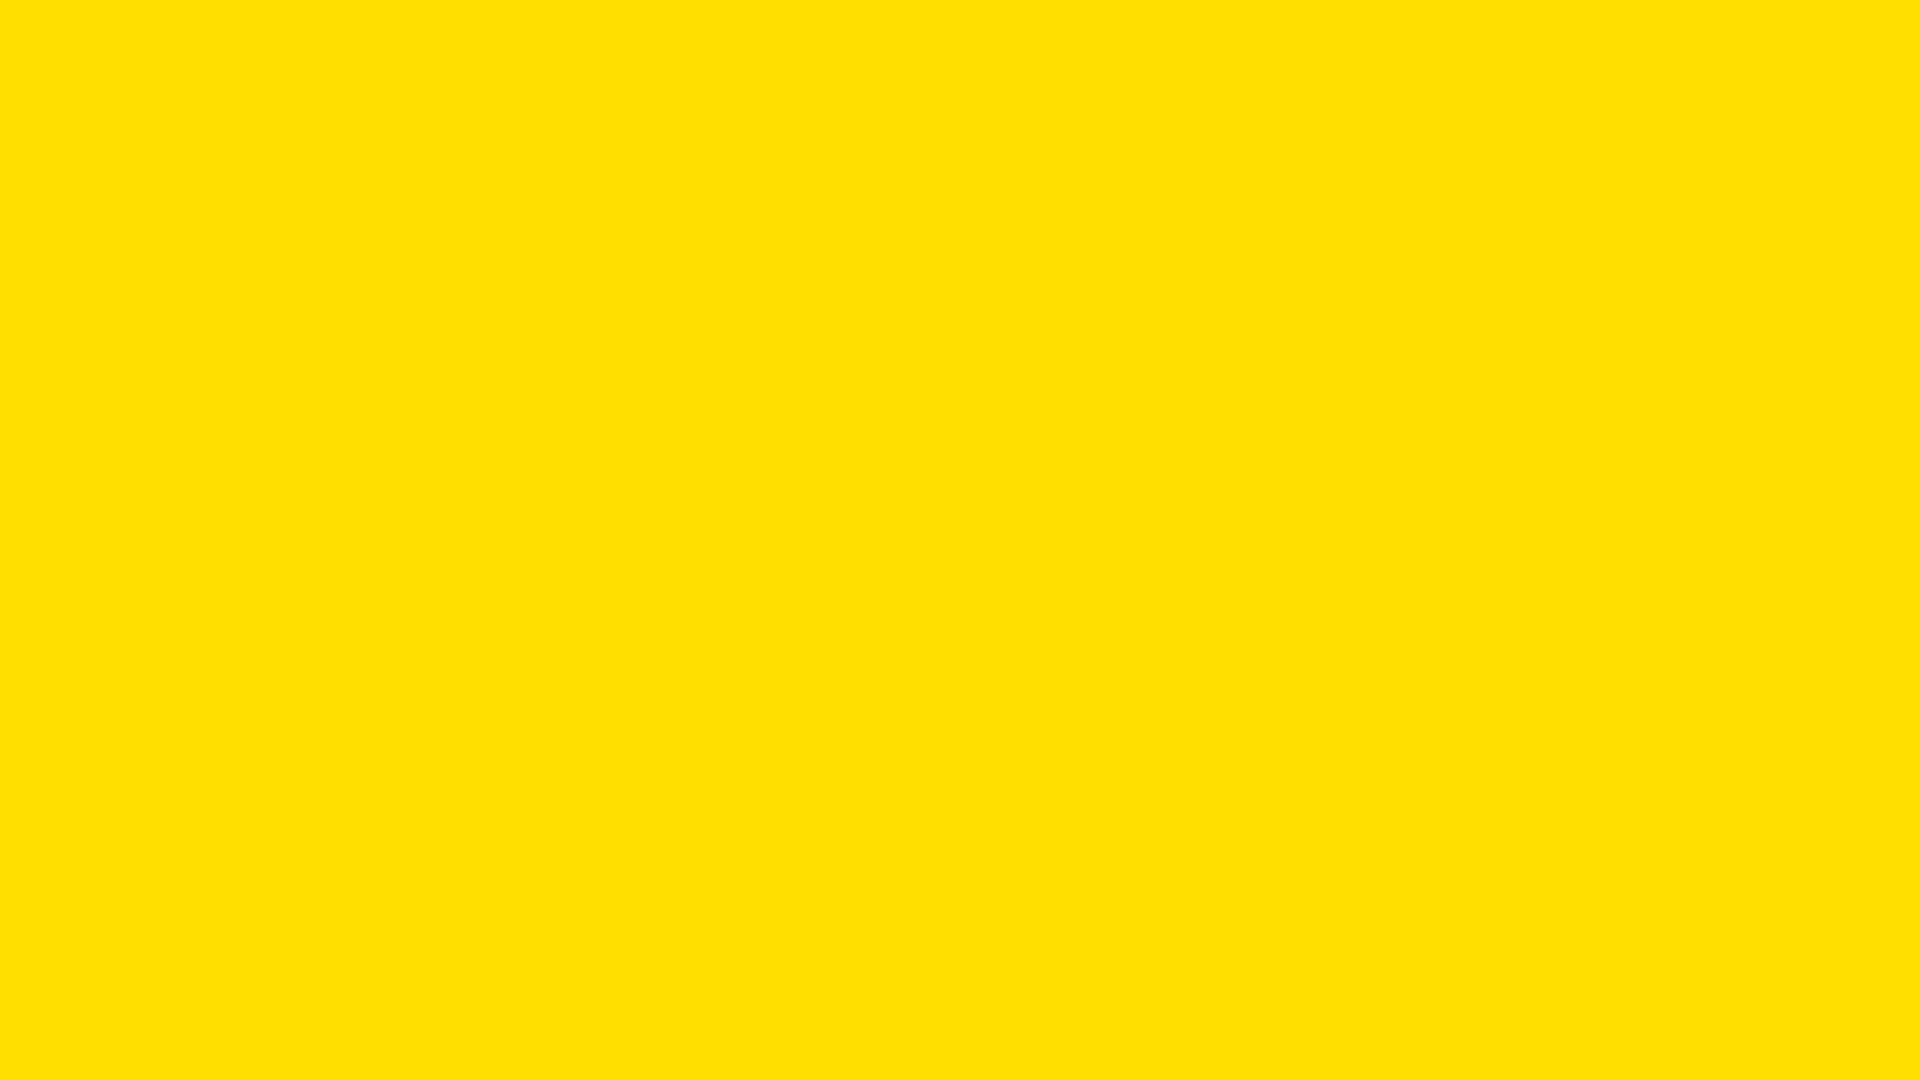 Hình ảnh về màu vàng rực rỡ này mang đến sự ấm áp và đẳng cấp cho mọi không gian. Kiểu dáng đơn giản nhưng tinh tế tạo nên vẻ đẹp thanh lịch và quý phái. Hãy xem những hình ảnh này để có trải nghiệm về sự sang trọng và ấm áp của màu vàng.